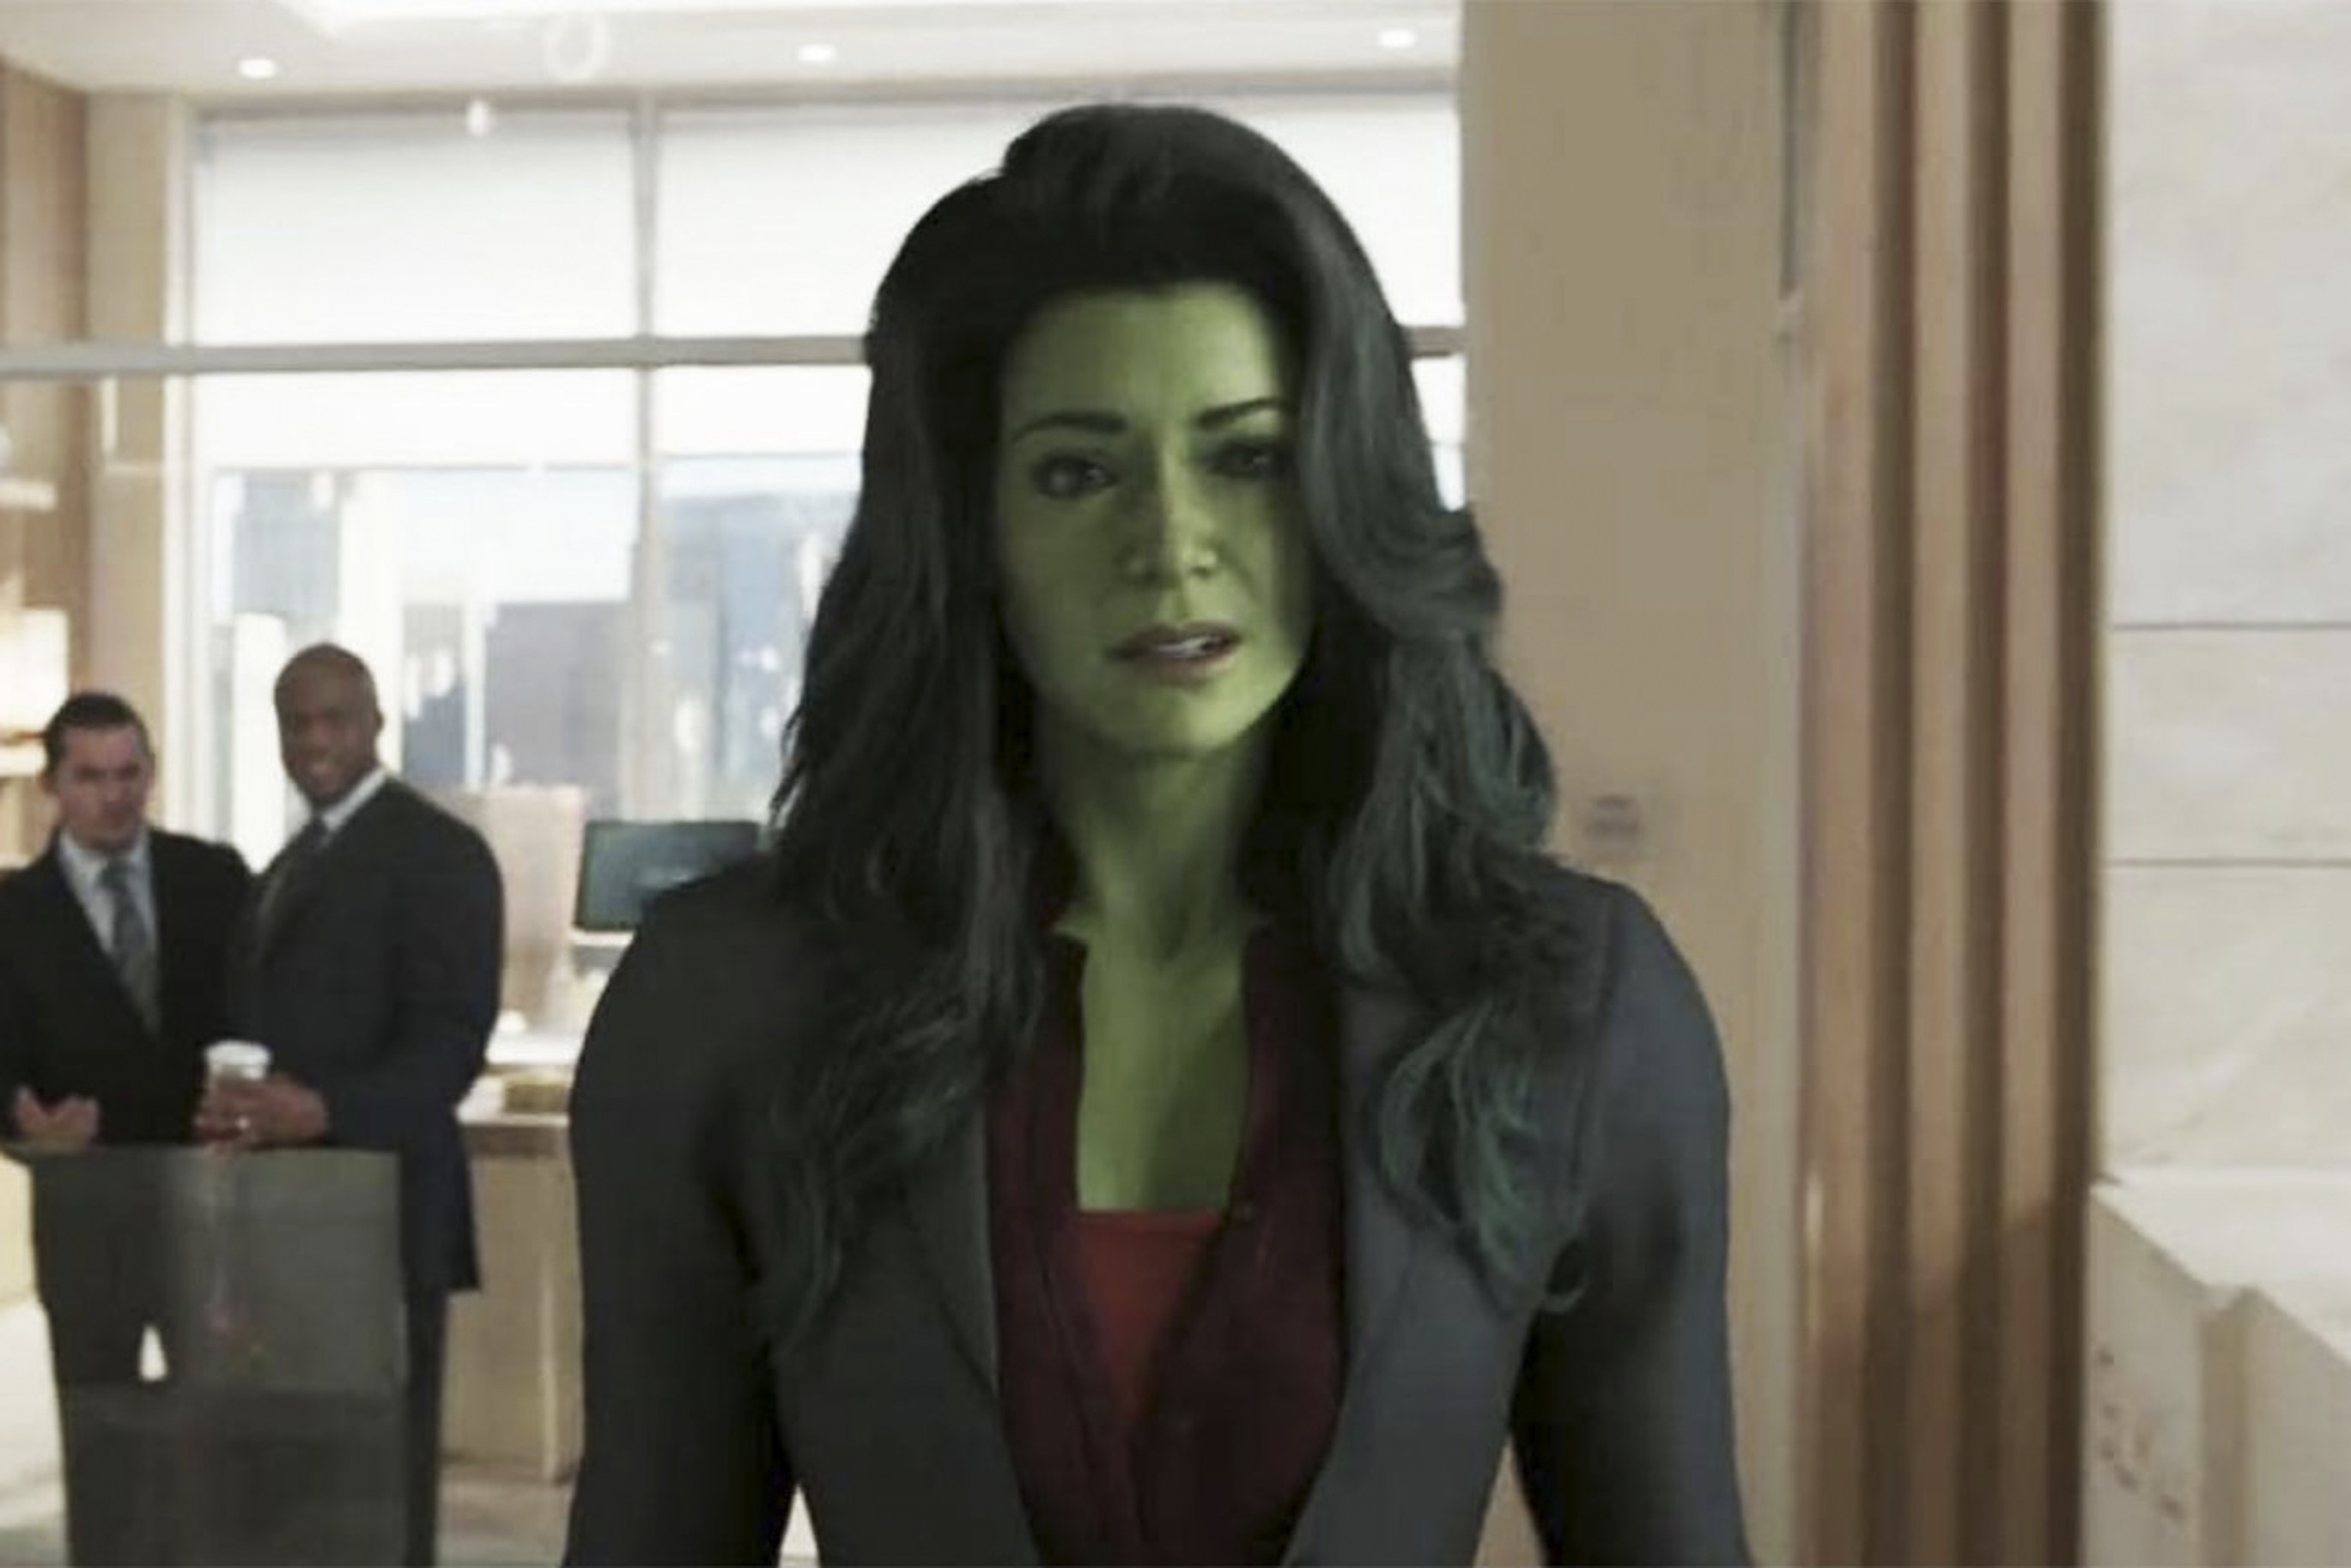 She-Hulk: Attorney at Law Star Tatiana Maslany on 2-Body Comedy